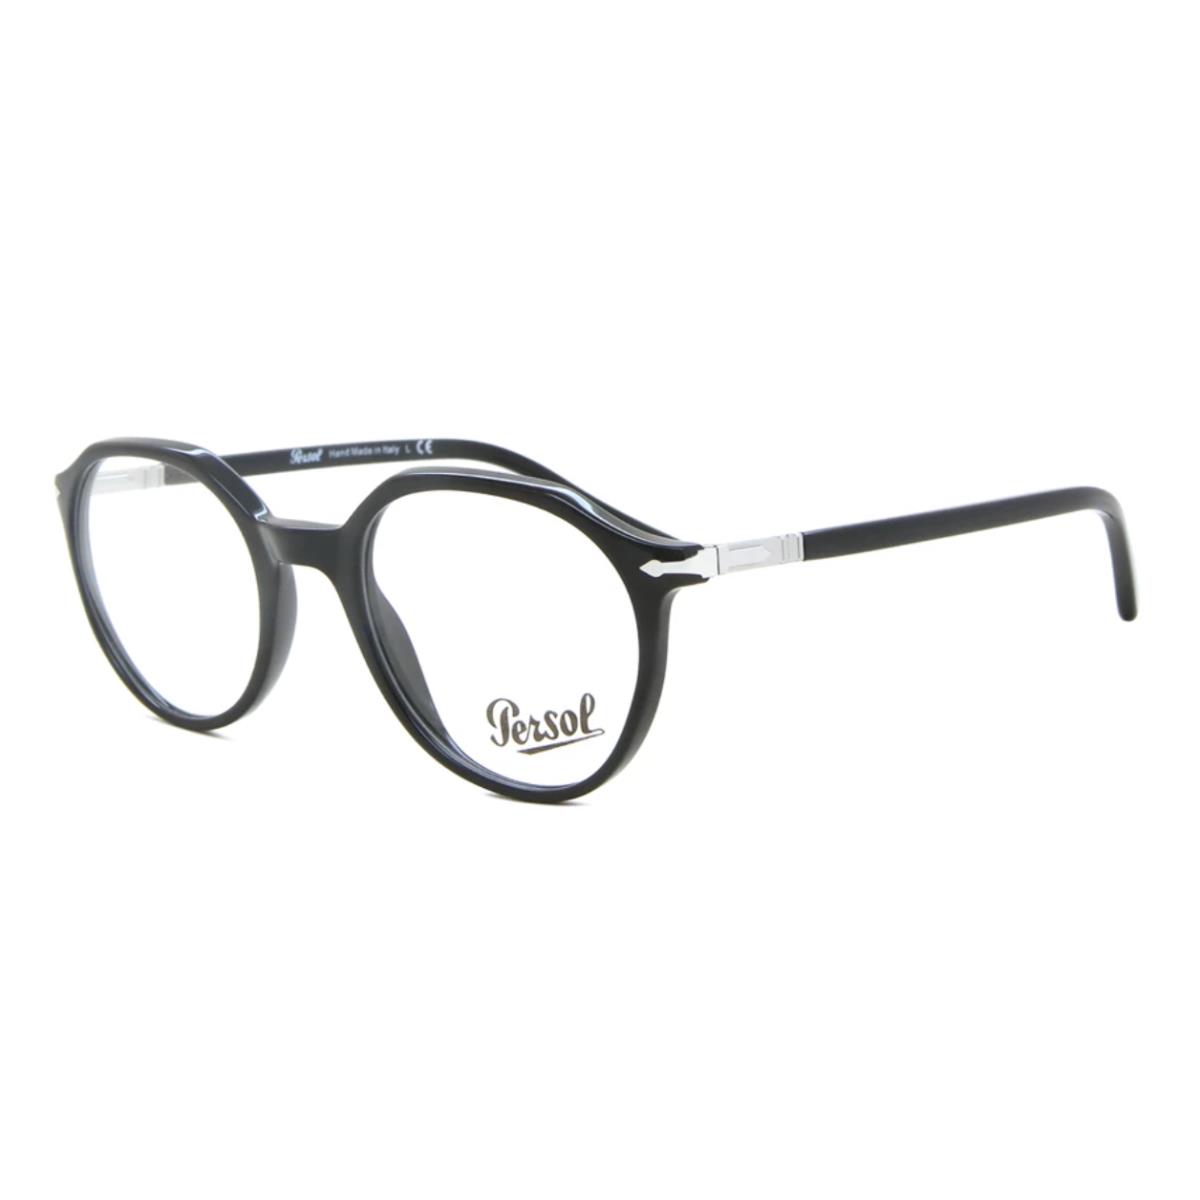 Persol Eyeglasses 3253-V 95 49-20 145 Black Round Frames with Spring Hinges